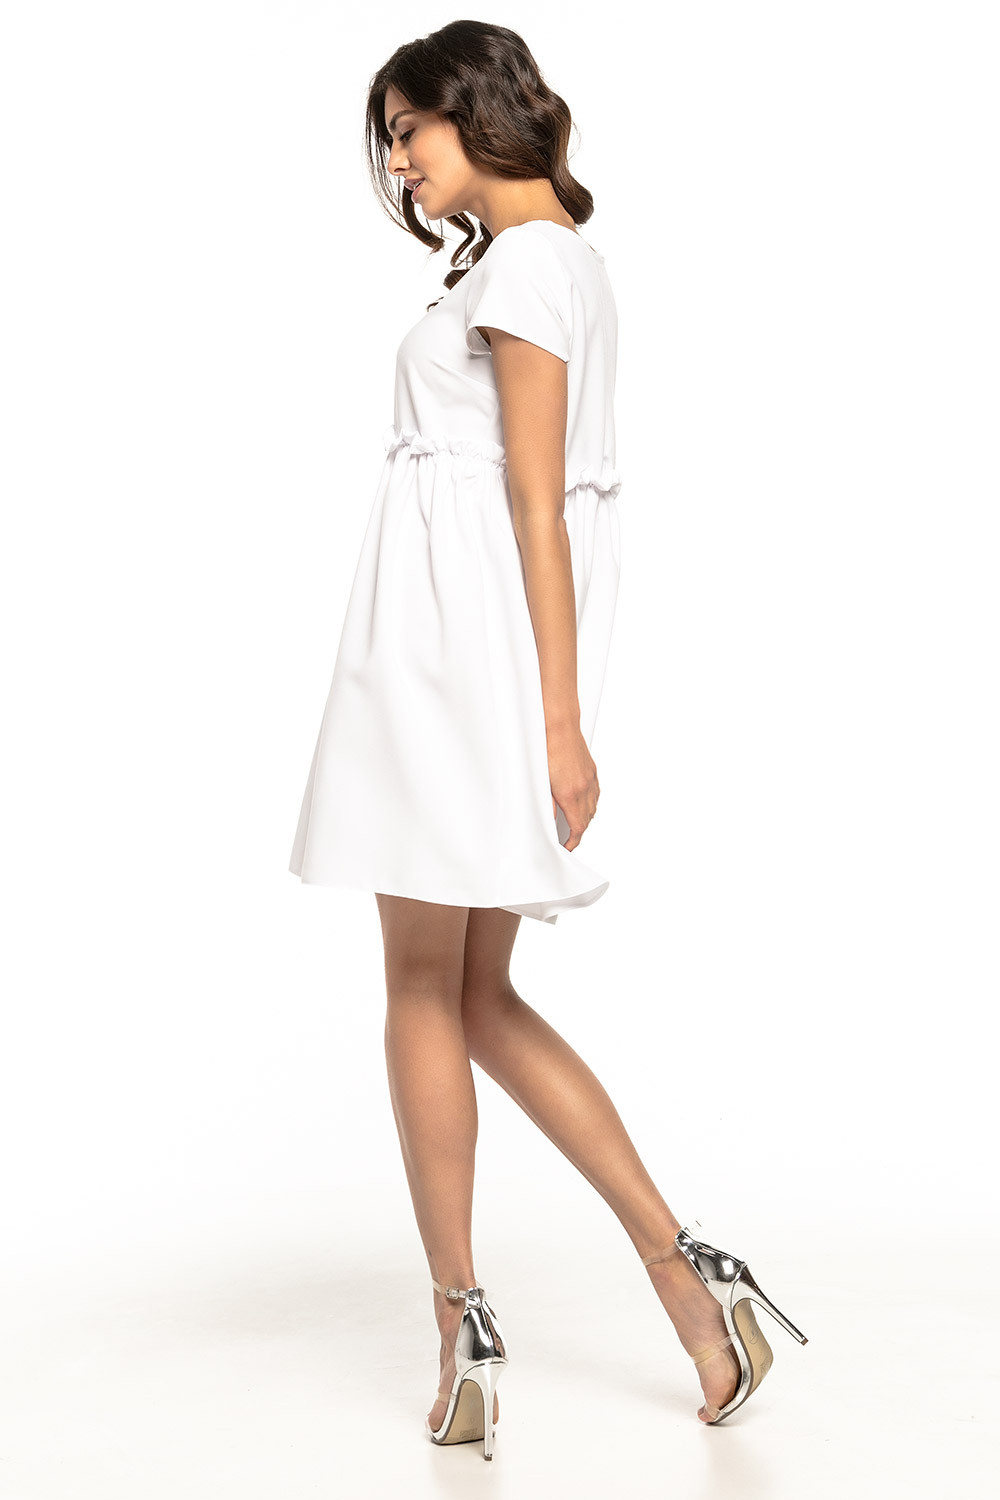 Denní šaty model T266/1 Tessita 127932 bílá 36/S